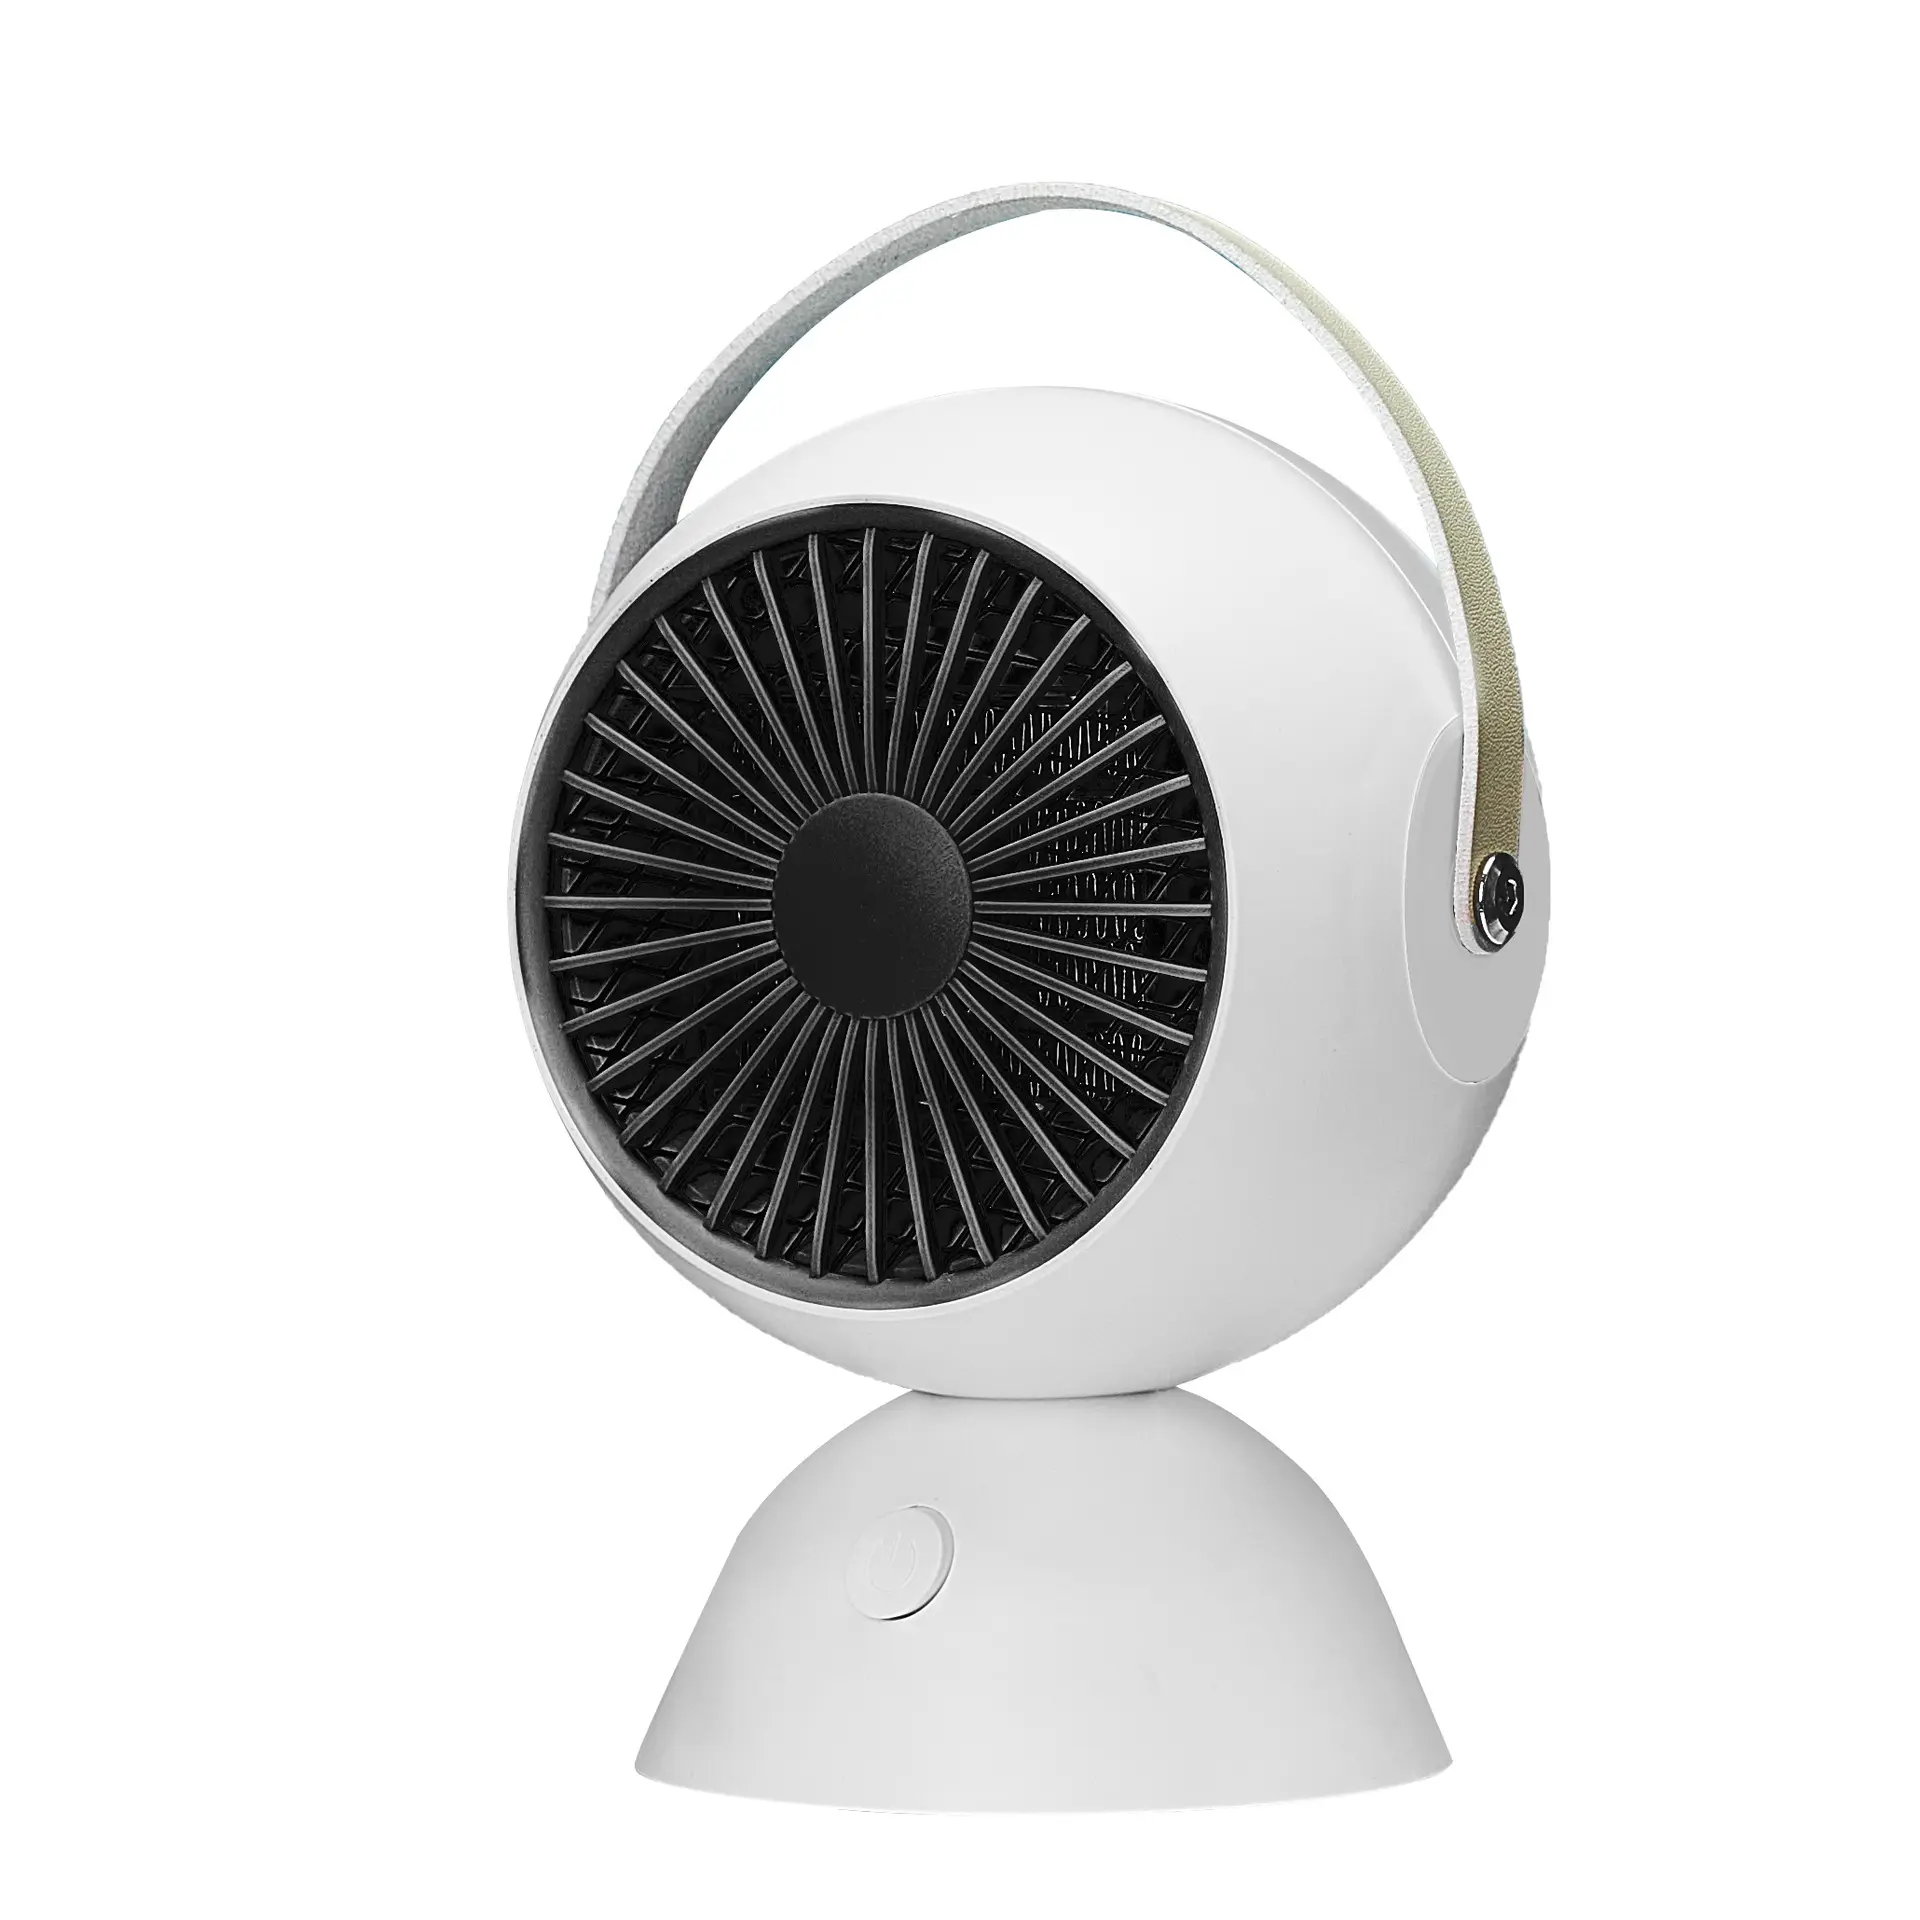 2022 Best Selling Space Heater Fan,Portable Ptc Electric PTC Heaters,Personal Desktop Home Room Office Mini Fan Heater